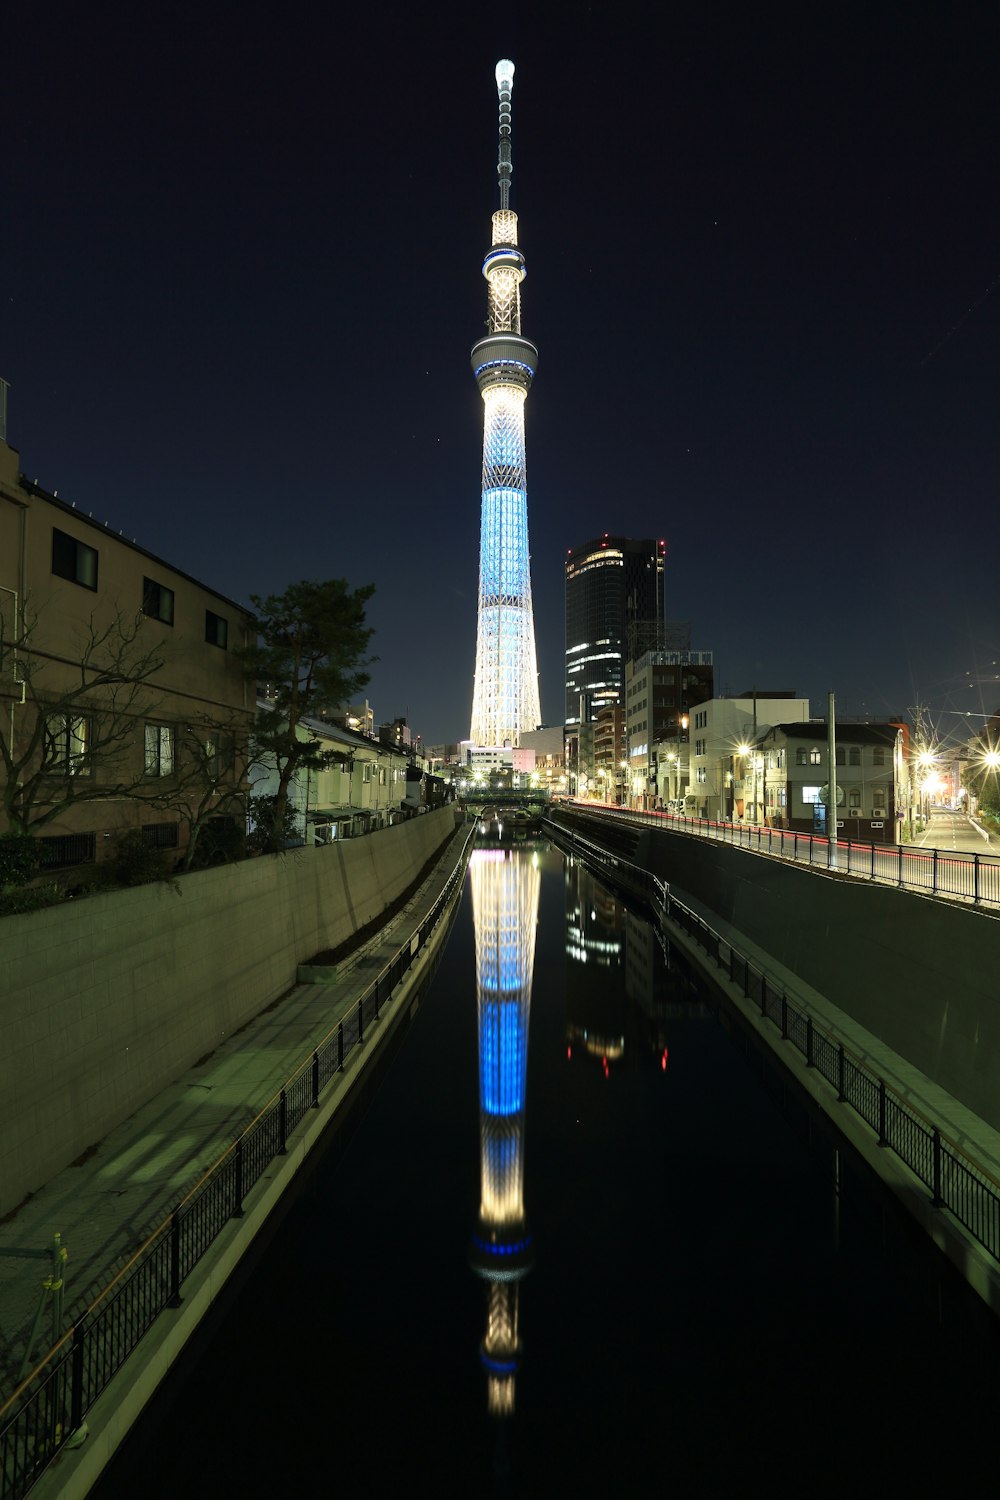 Torre iluminada en azul y blanco durante la noche